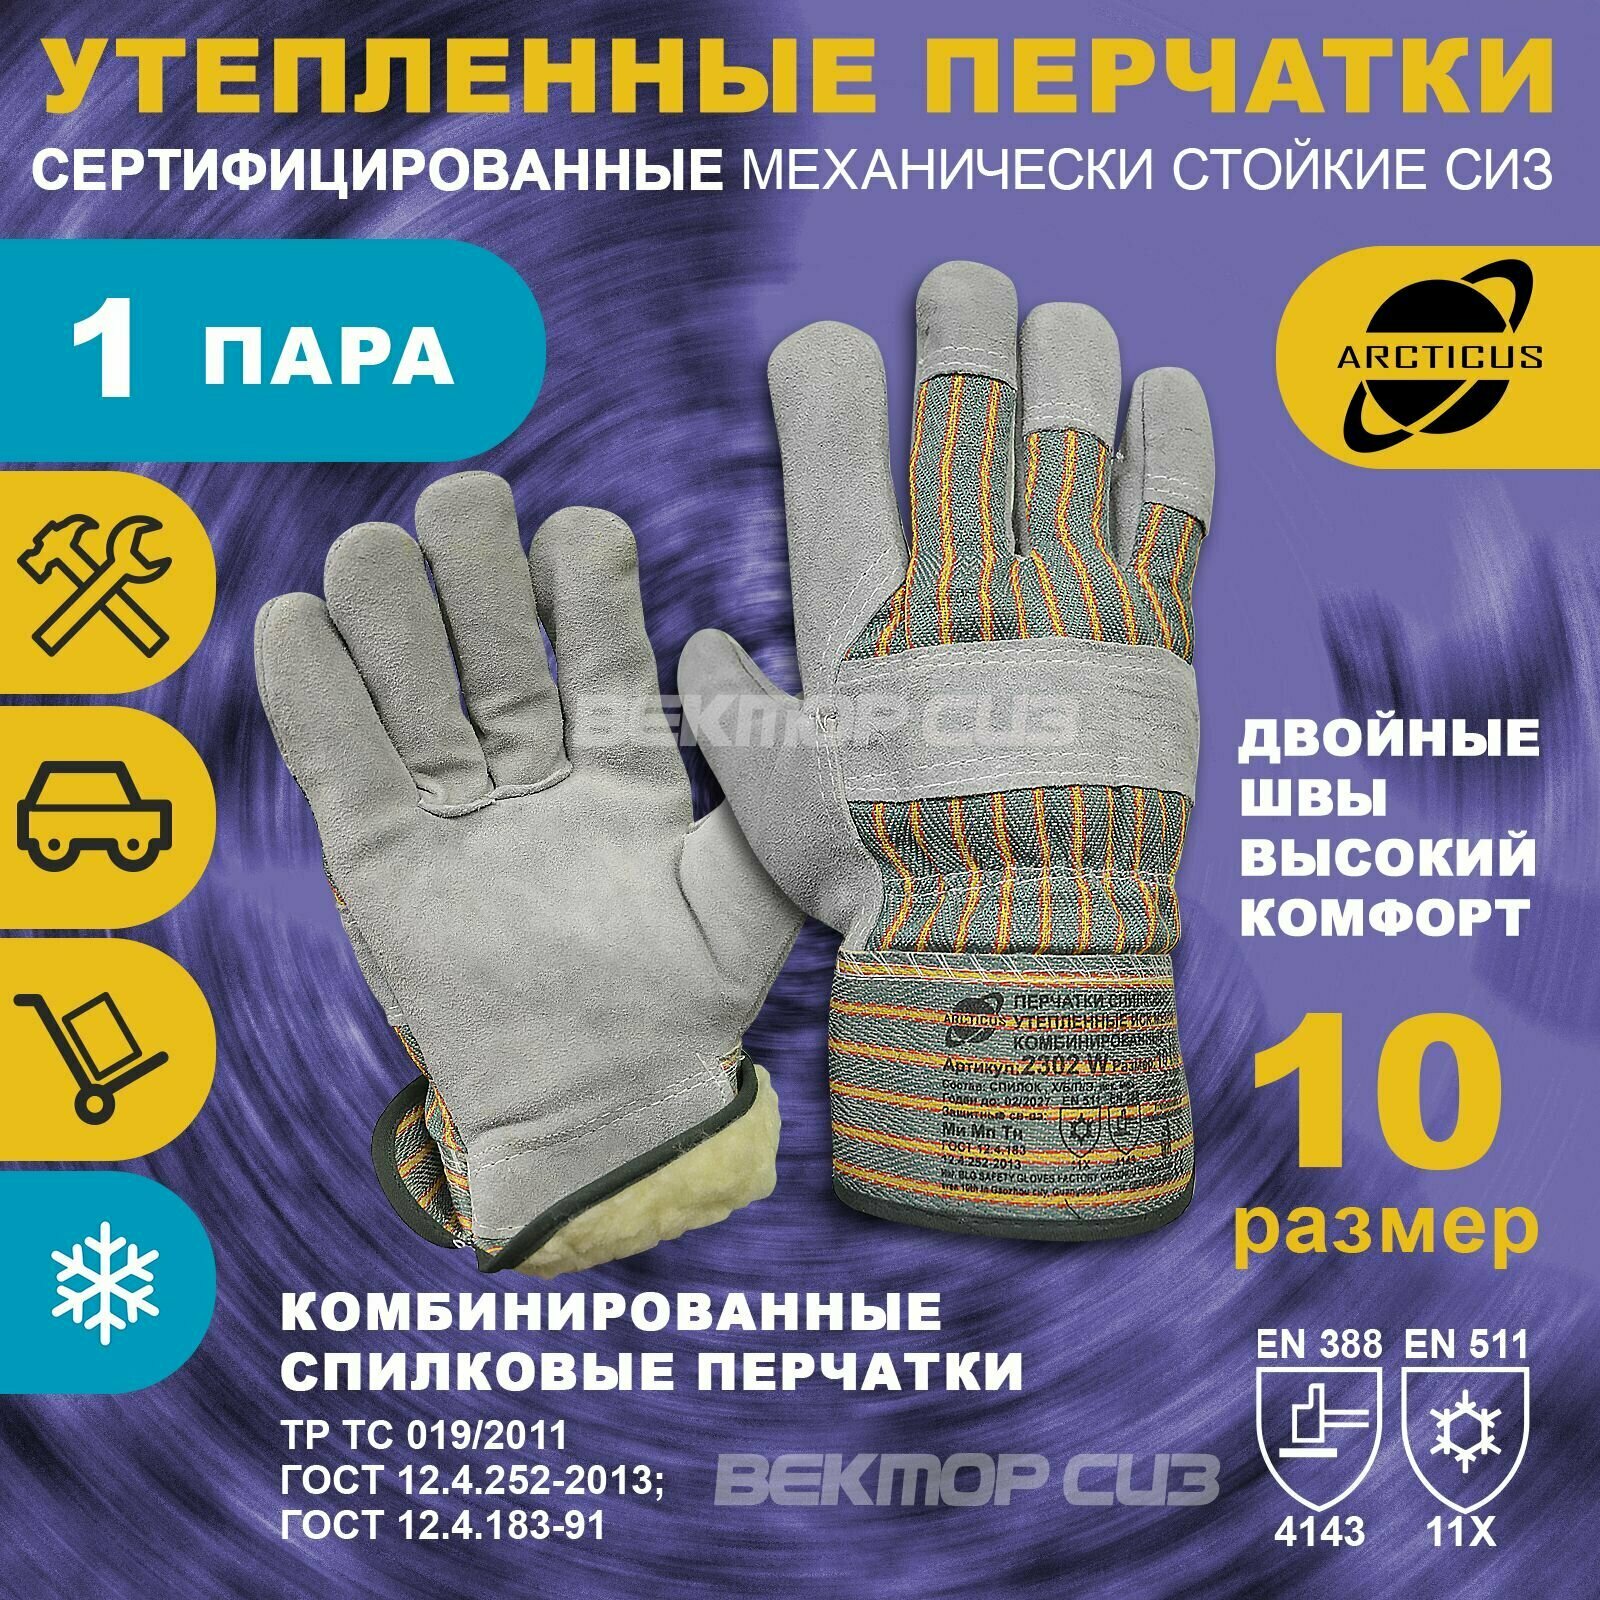 Зимние комбинированные спилковые перчатки ARCTICUS арт. 2302W 11 размер 5 пар